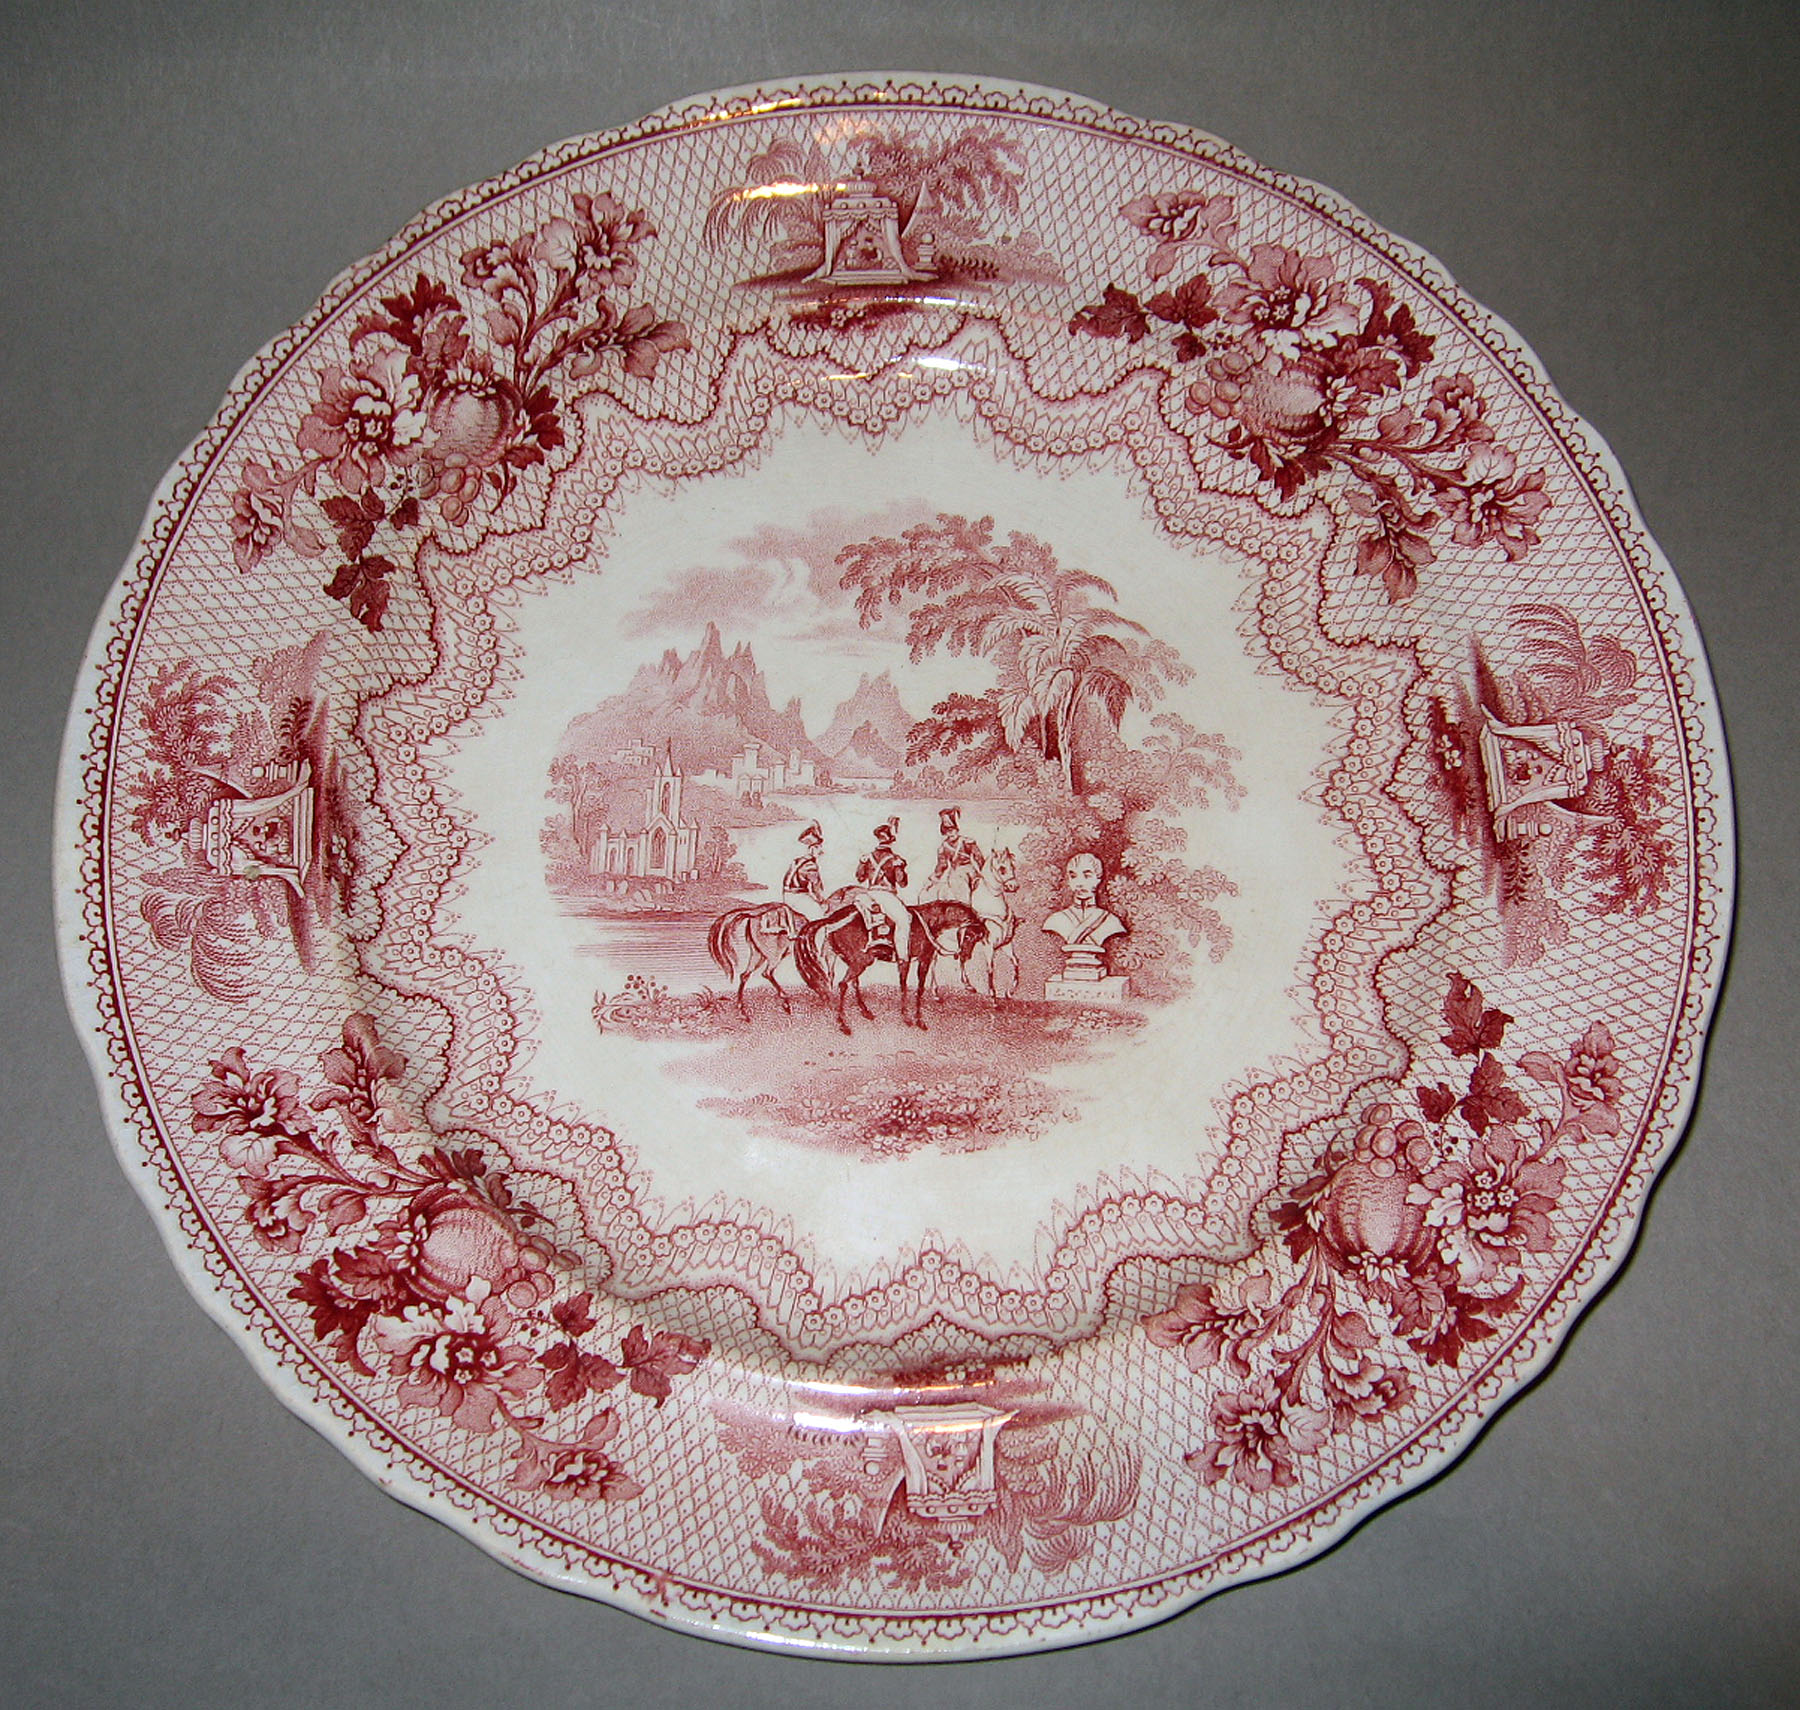 1961.0441.002 Heath earthenware plate